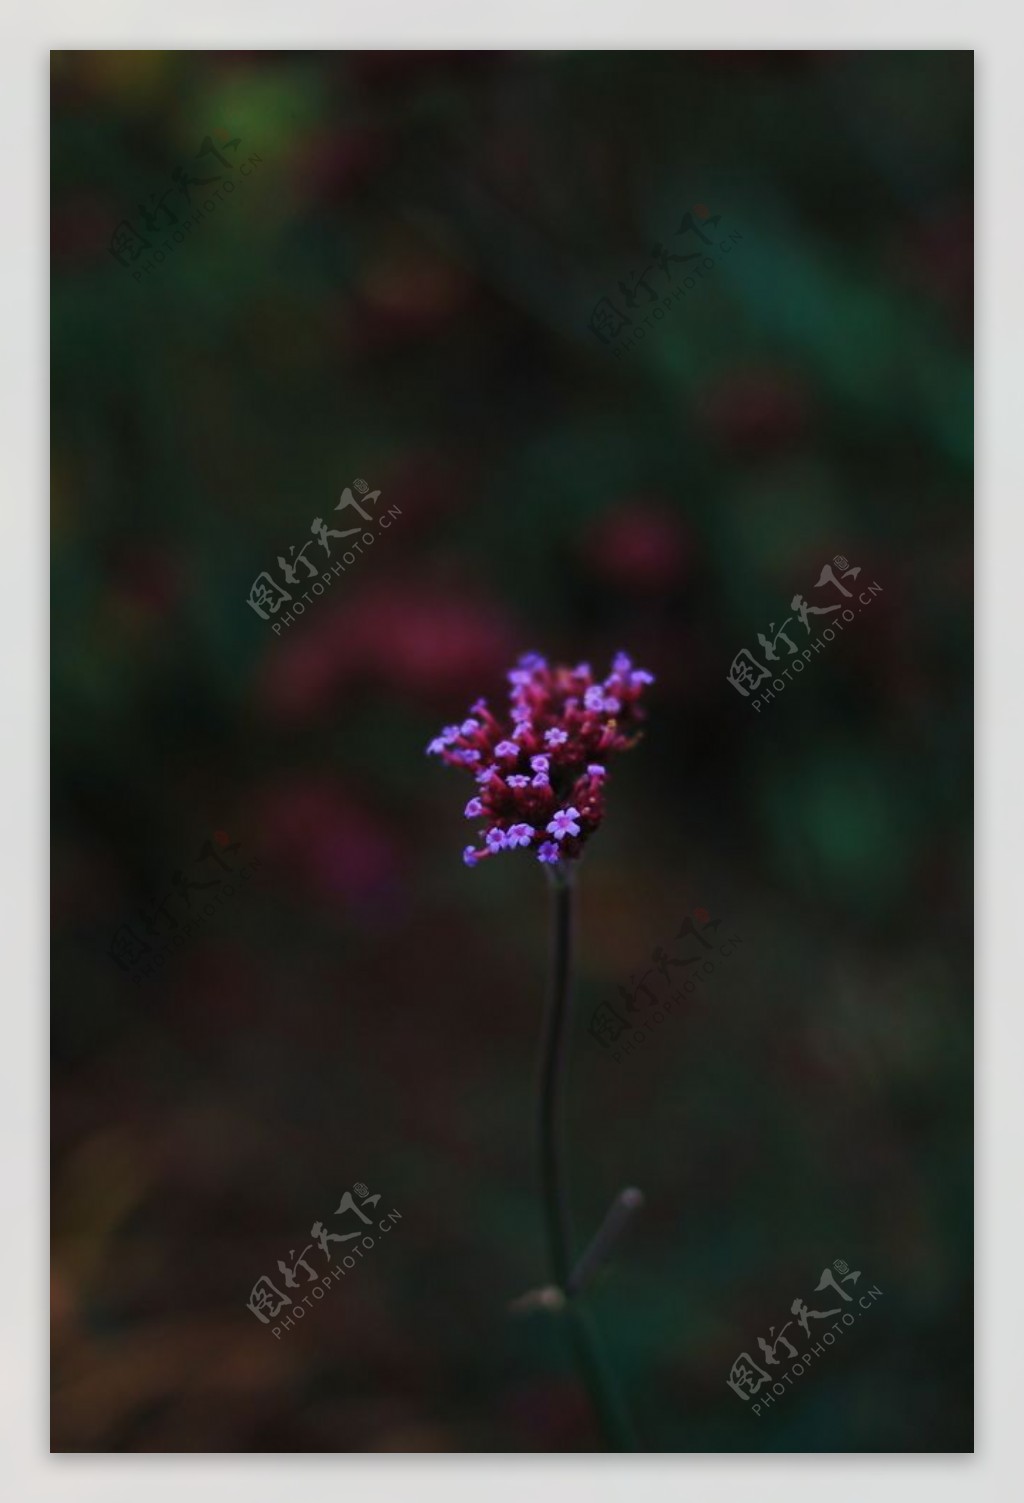 紫色花朵草丛植物背景